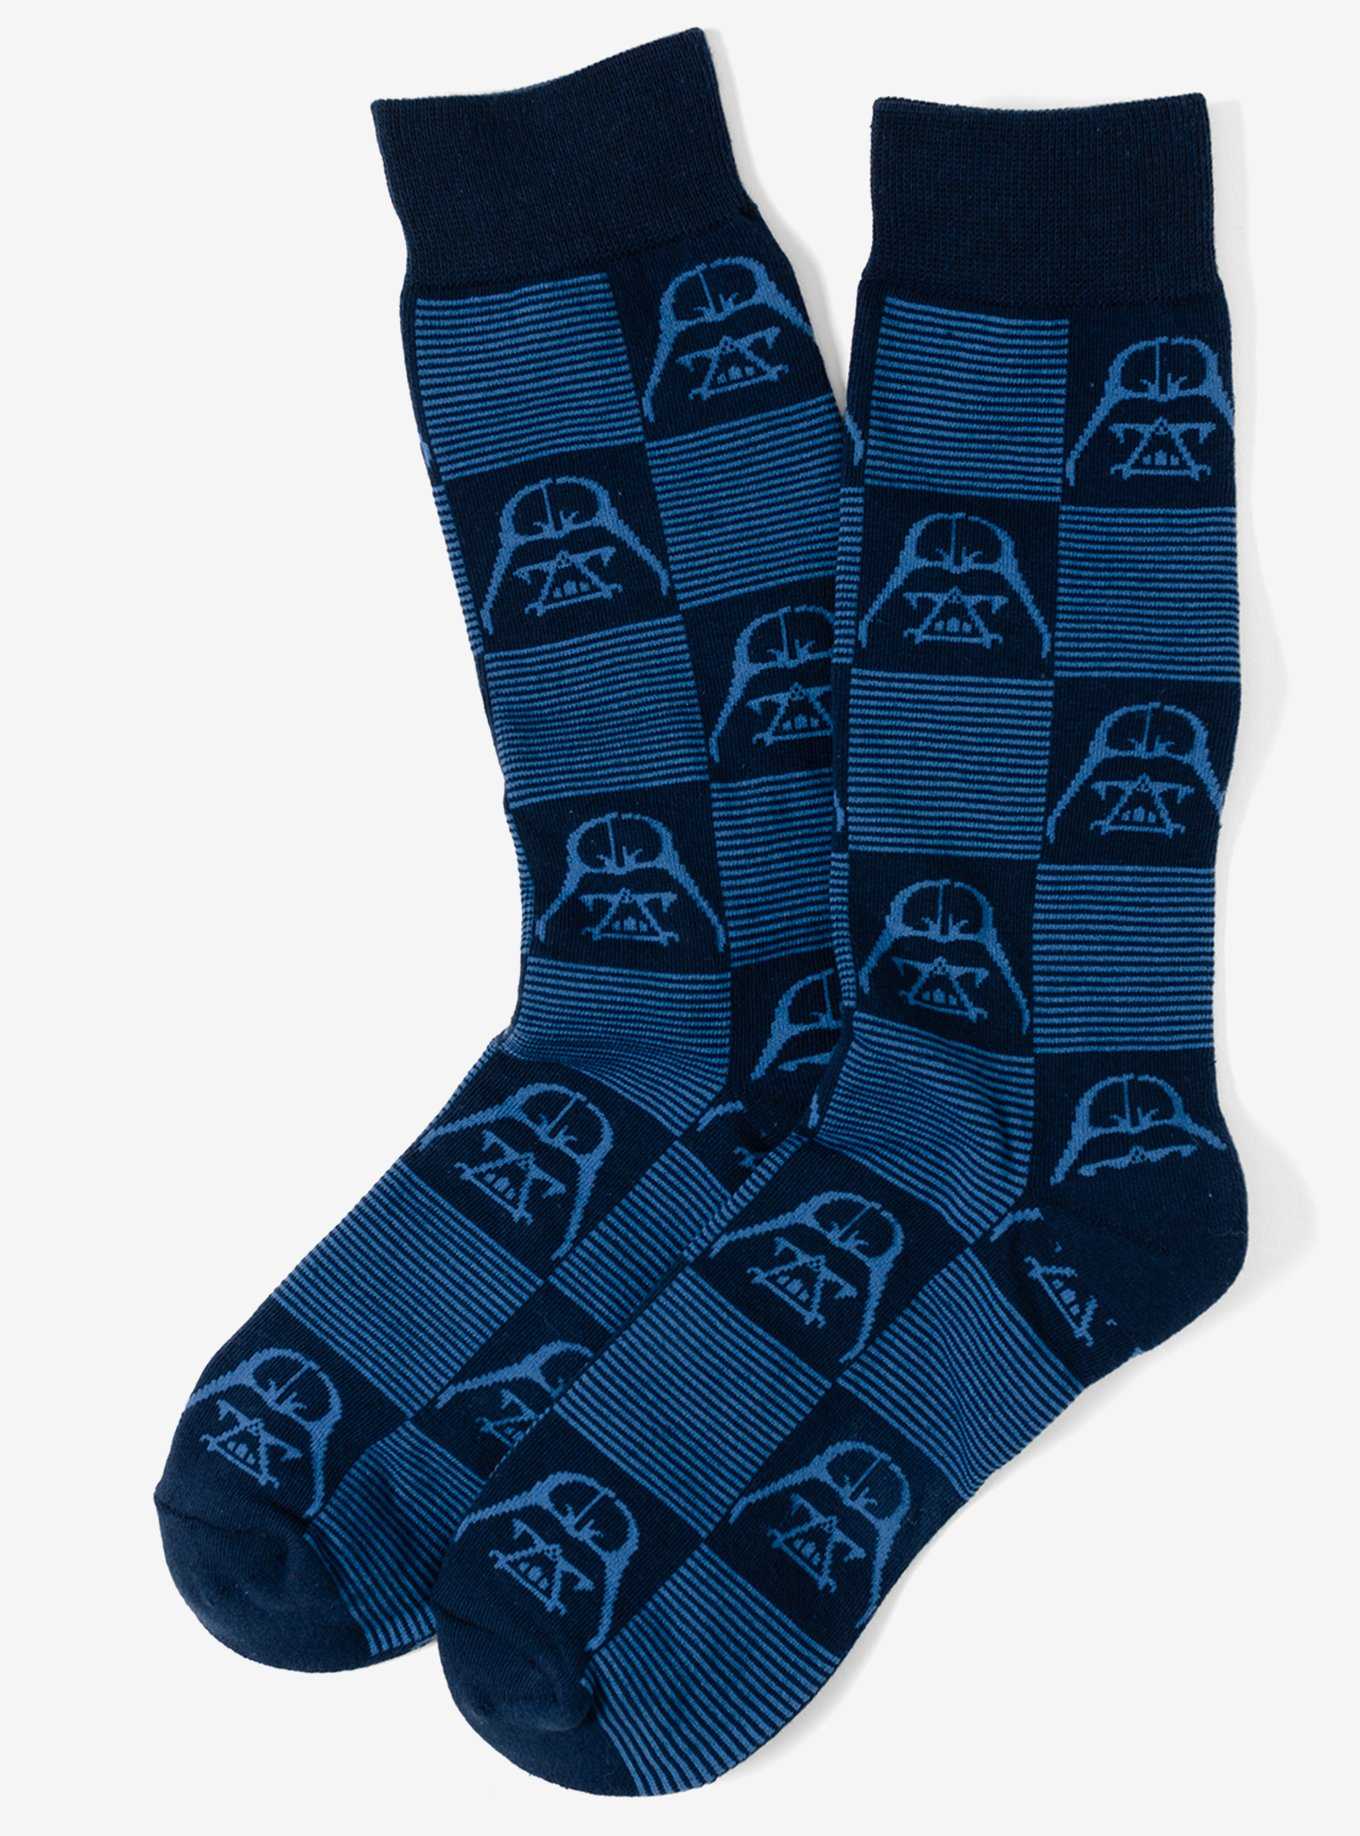 Star Wars Darth Vader Navy Check Men's Socks, , hi-res